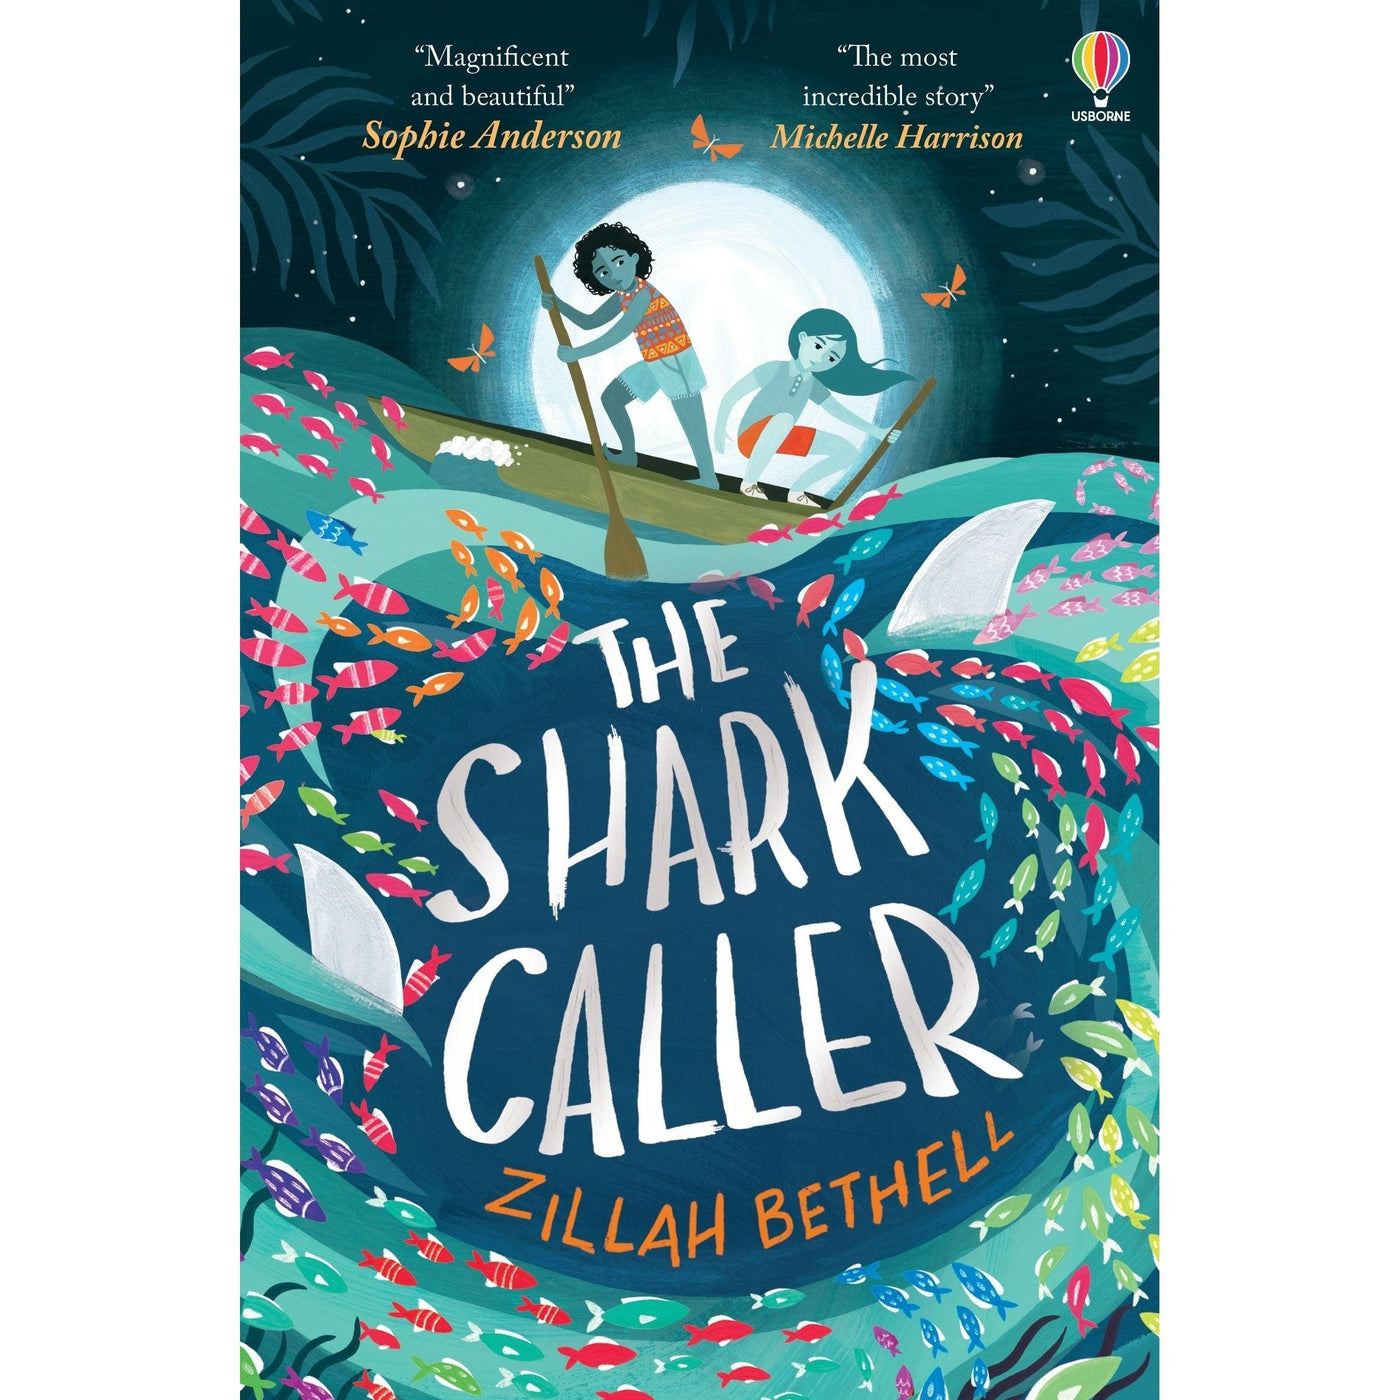 The Shark Caller - Zillah Bethell & Saara Soderlund